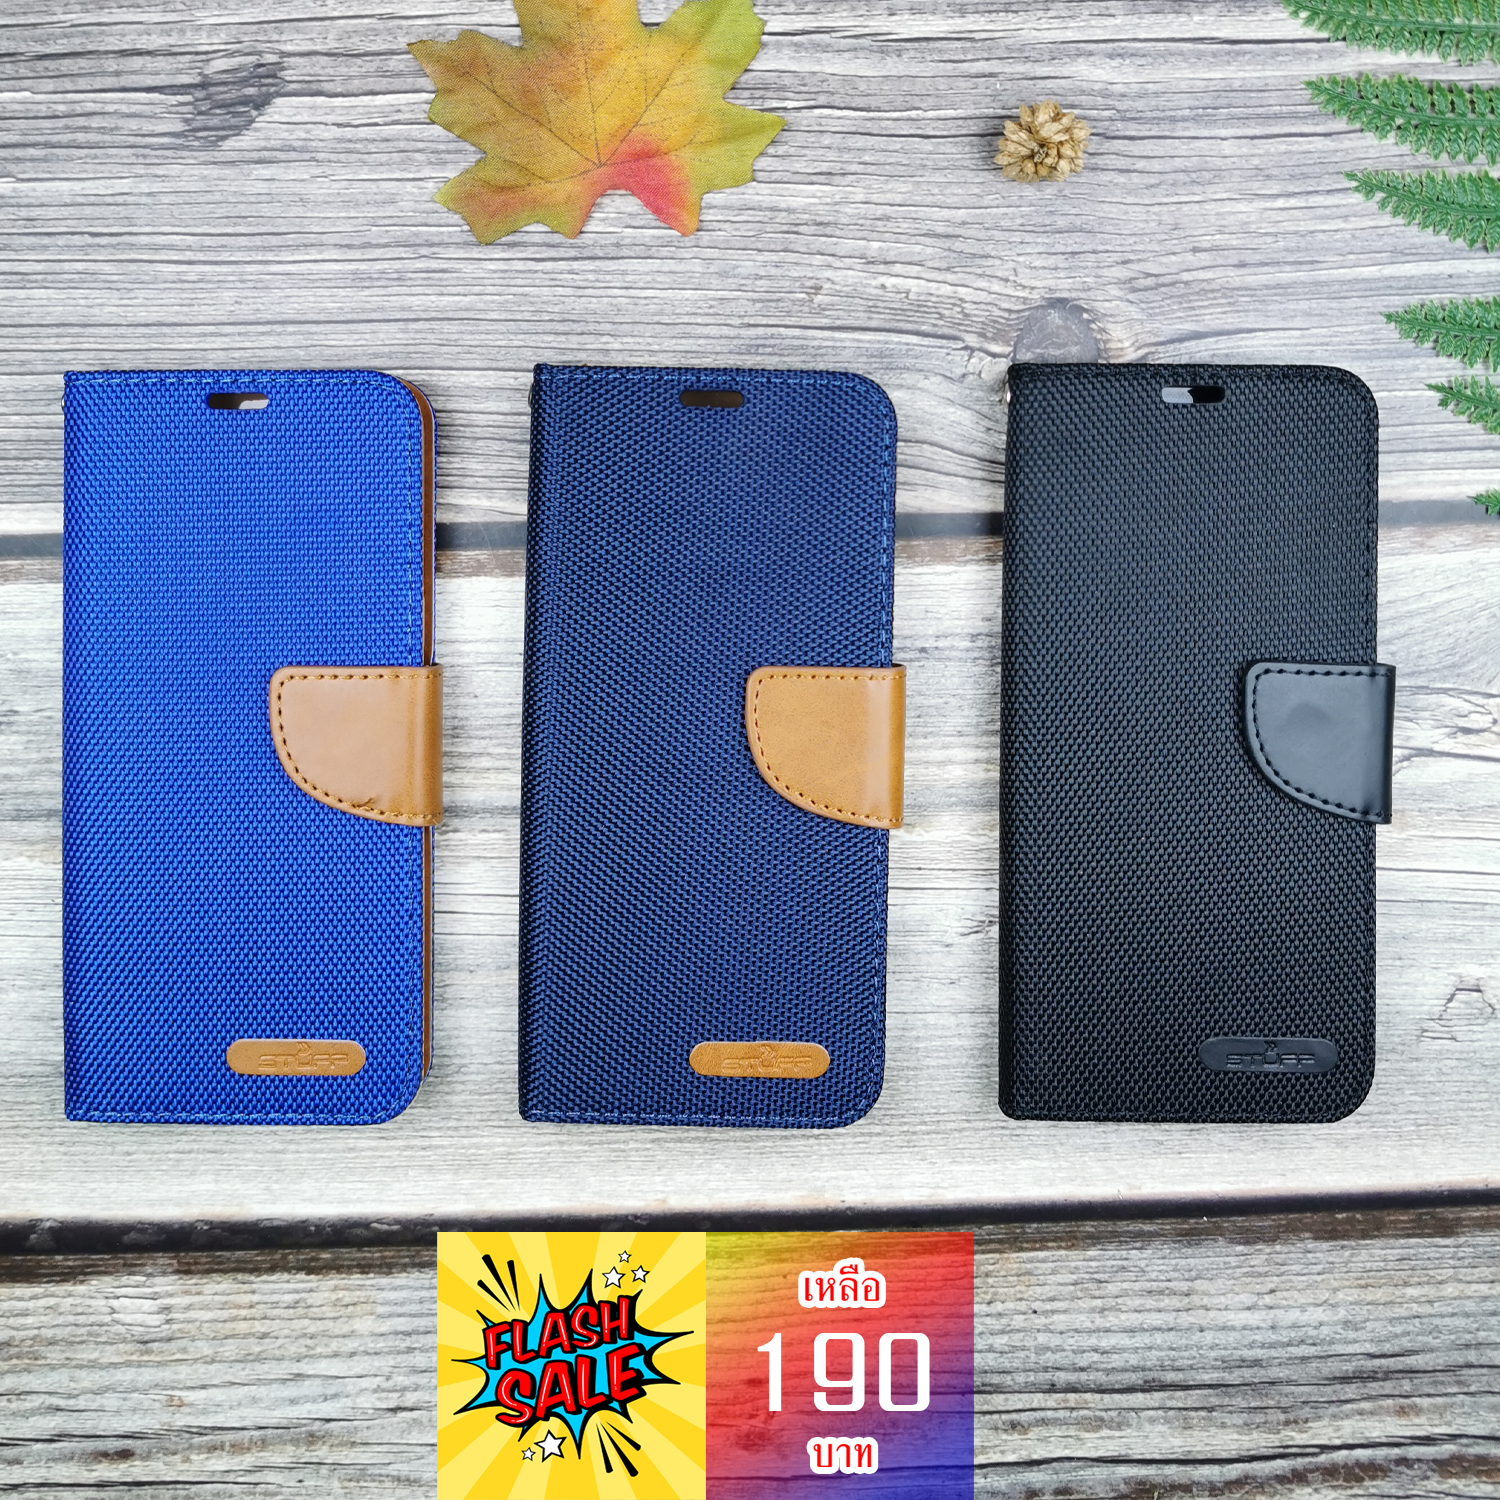 เคส S8 สีน้ำเงิน ( ซ้าย ) ( รหัสสินค้า 101091 )
